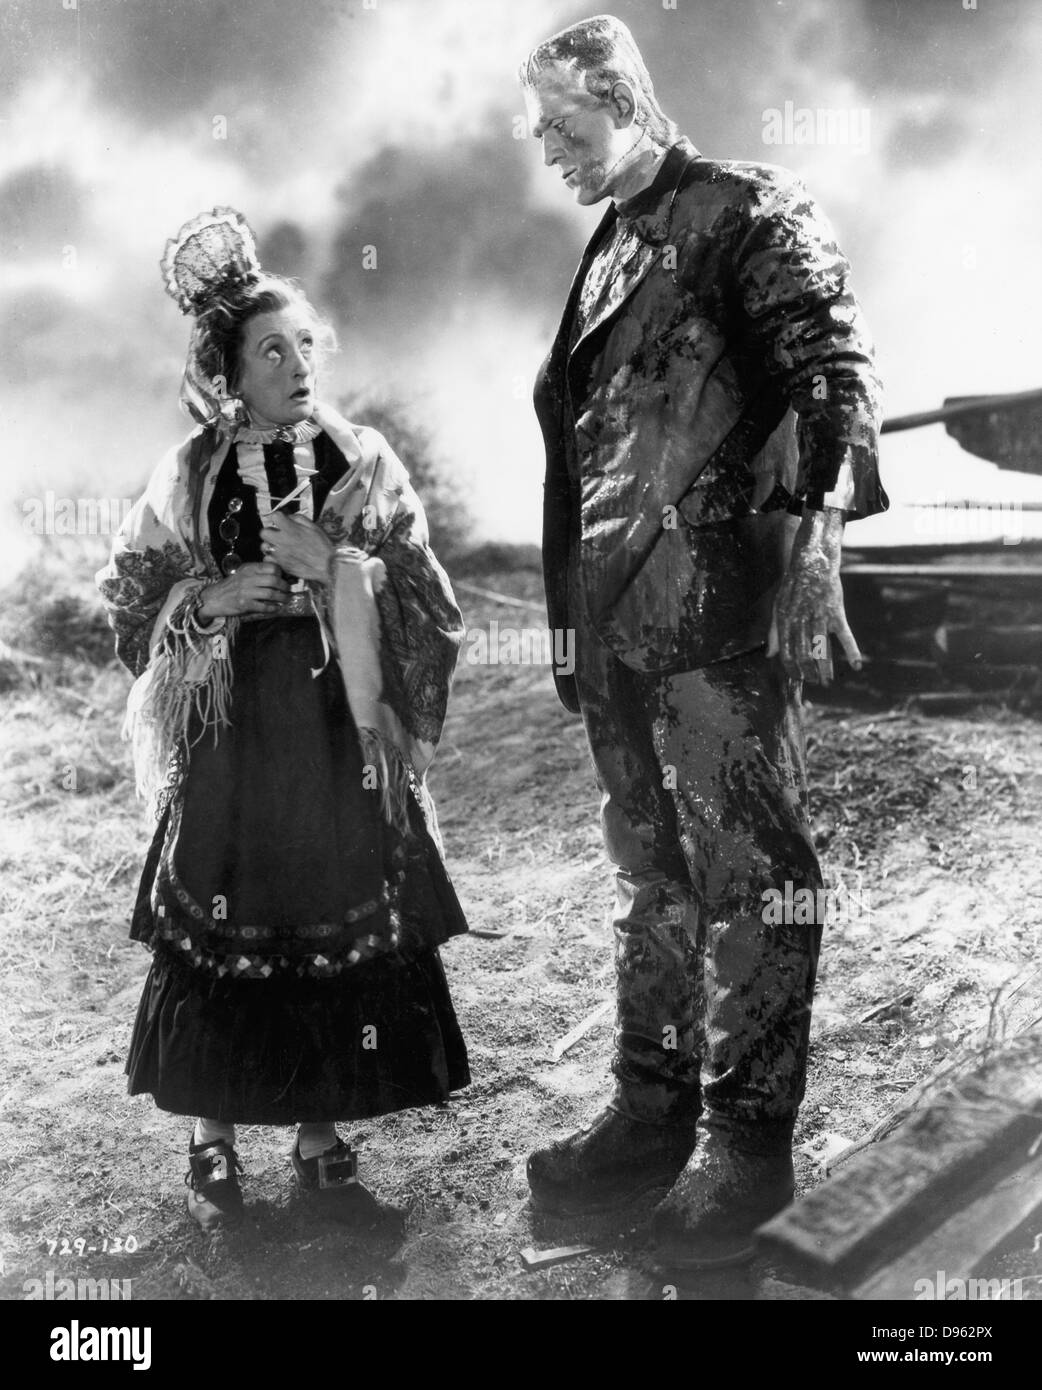 Boris Karloff (1887-1969) British-nati attore statunitense, come il mostro di Frankenstein. 1931 film universale "Frankenstein" basato sul romanzo di Mary Shelley. Foto Stock